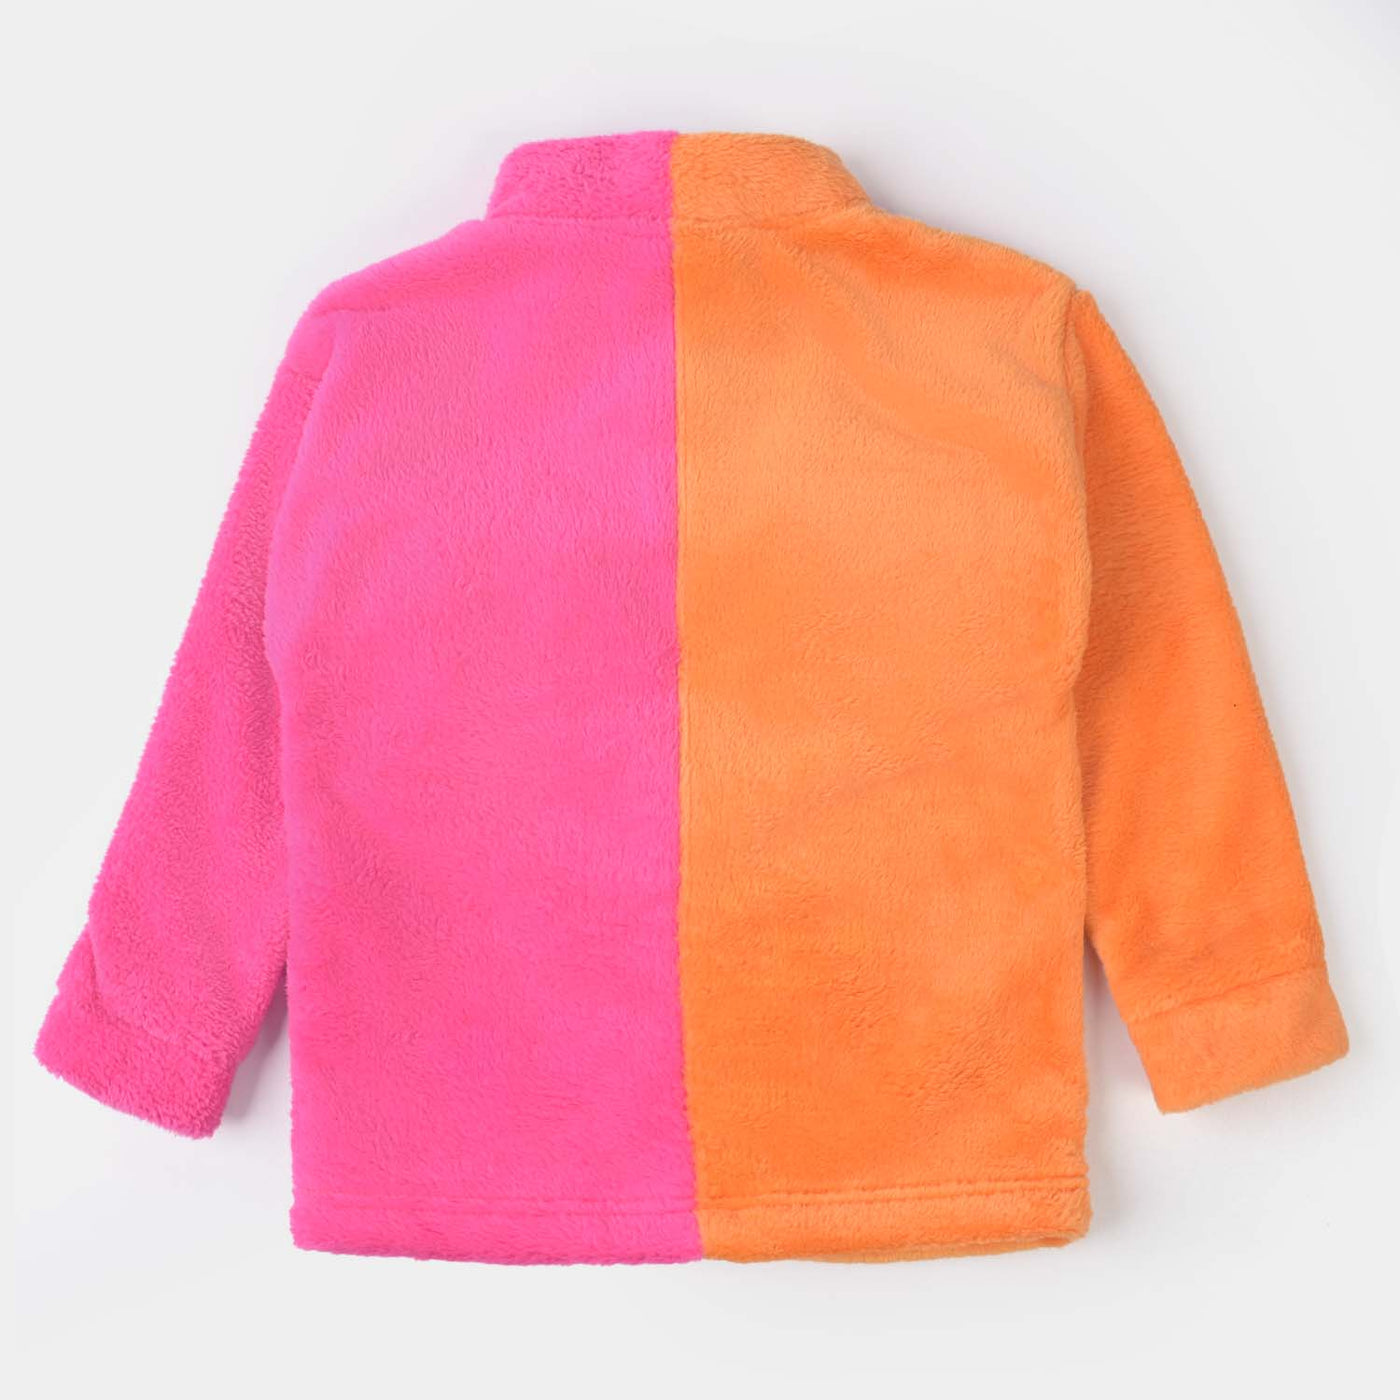 Girls Sherpa Jacket 2 Tone-Orange/Pink